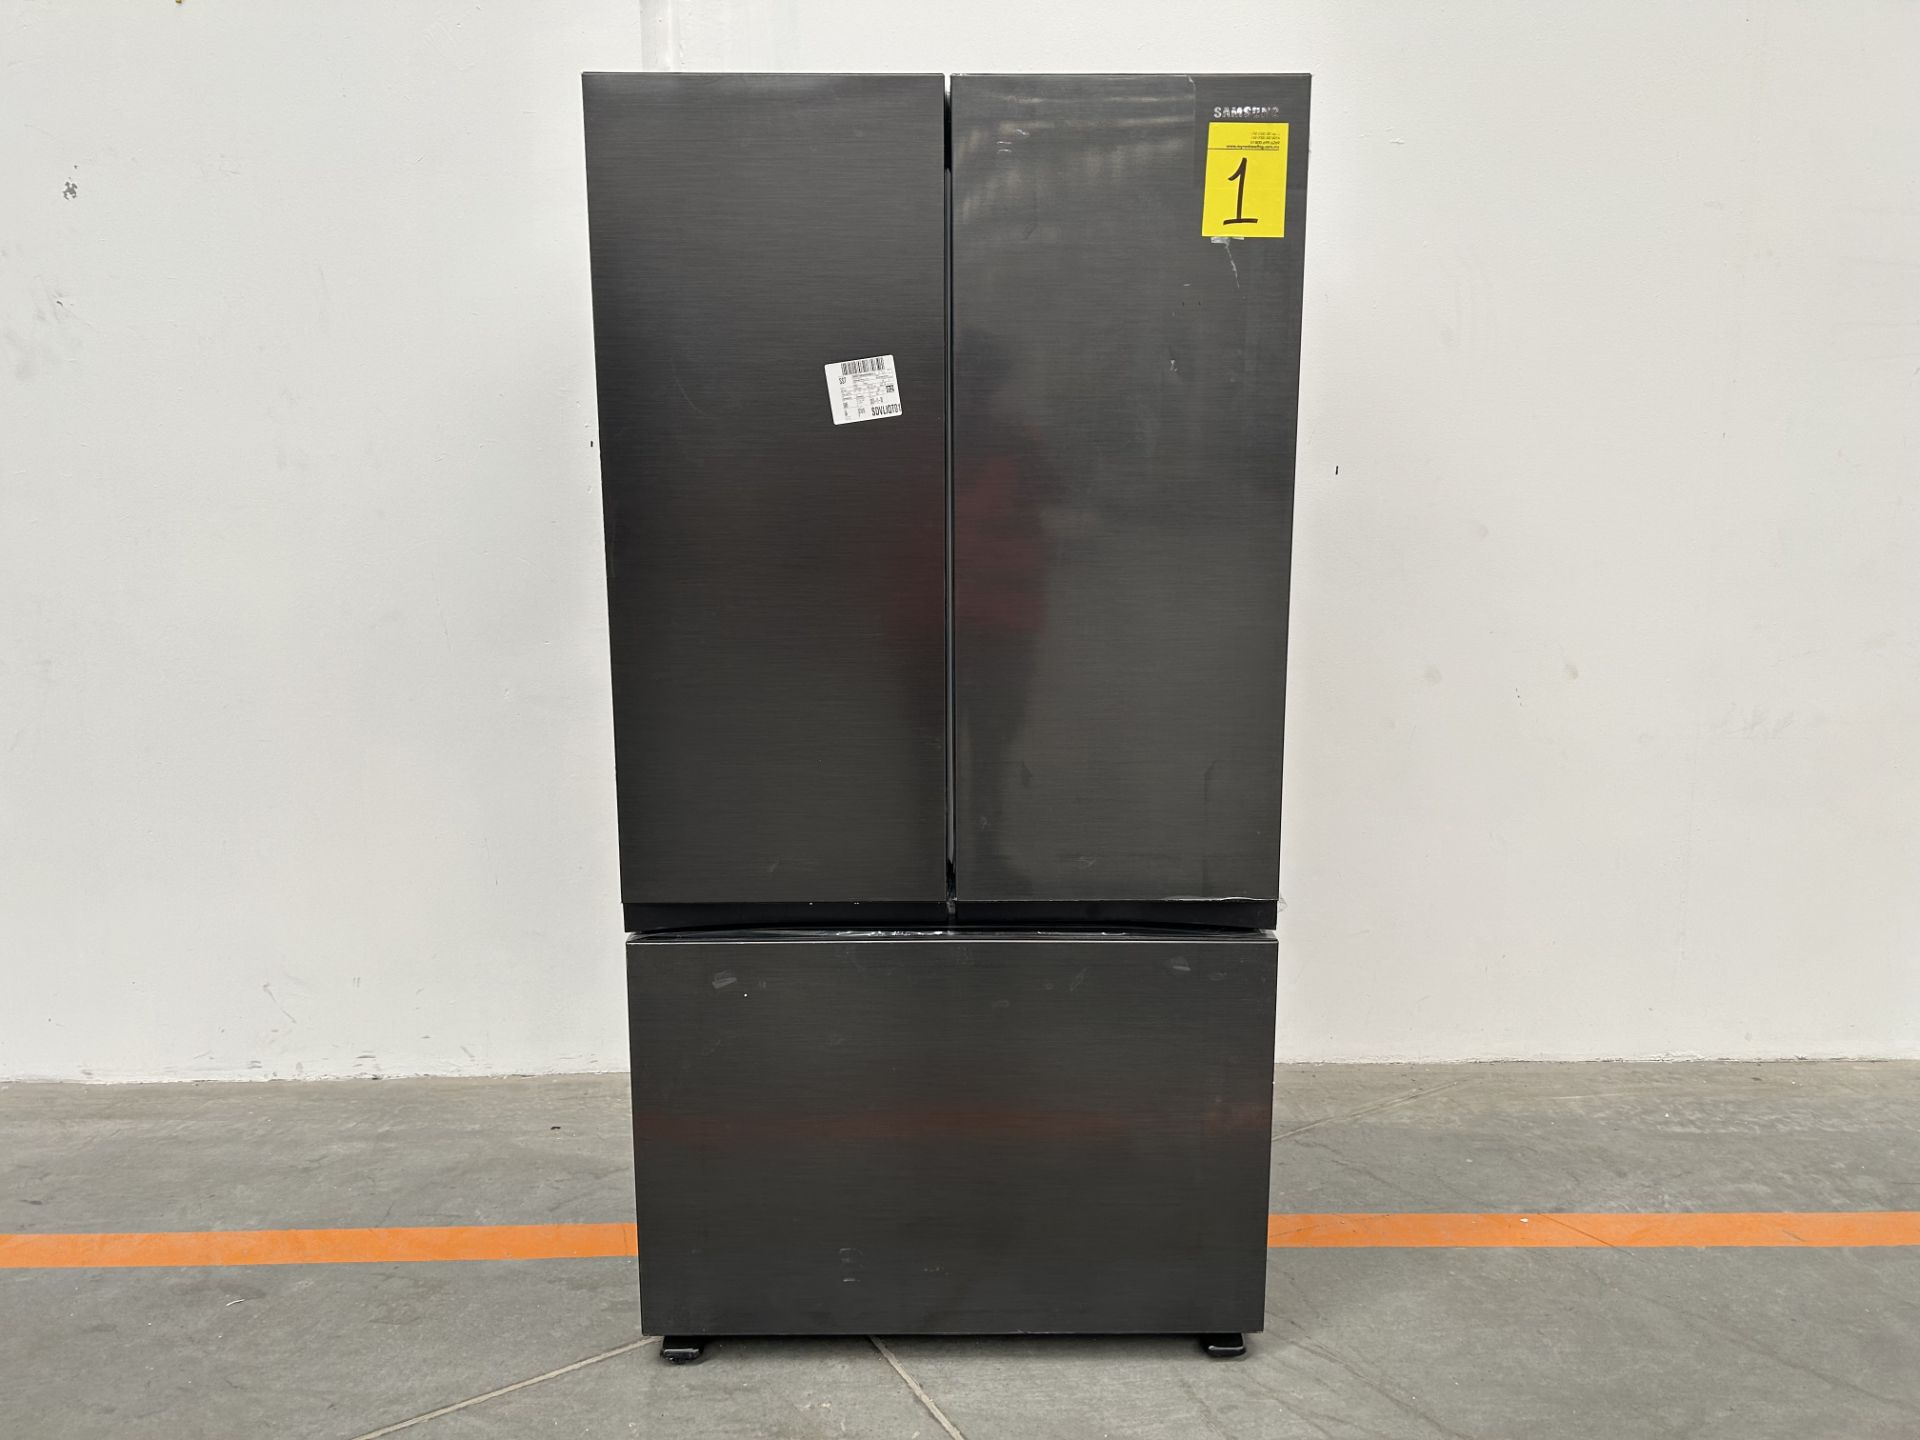 (NUEVO) Refrigerador Marca SAMSUNG, Modelo RF32CGN10B1EM, Serie 0639P, Color NEGRO